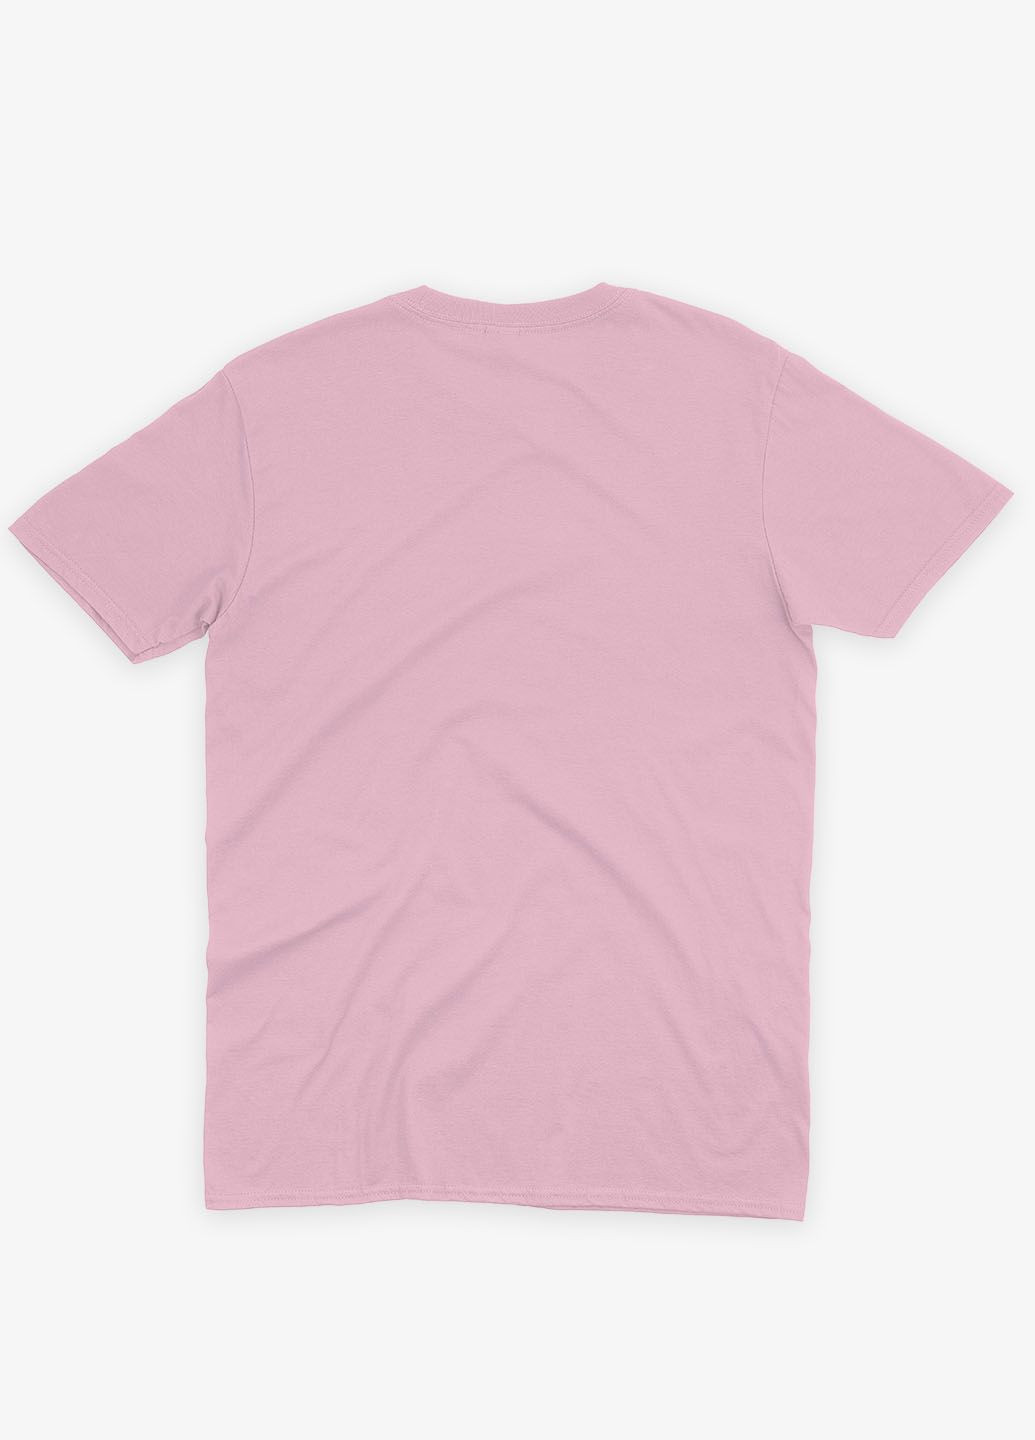 Светло-розовая демисезонная футболка для девочки с принтом супергероя - железный человек бледно-розовый 146-152 см (ts001-1-lpinkj-006-016-003-g) Modno